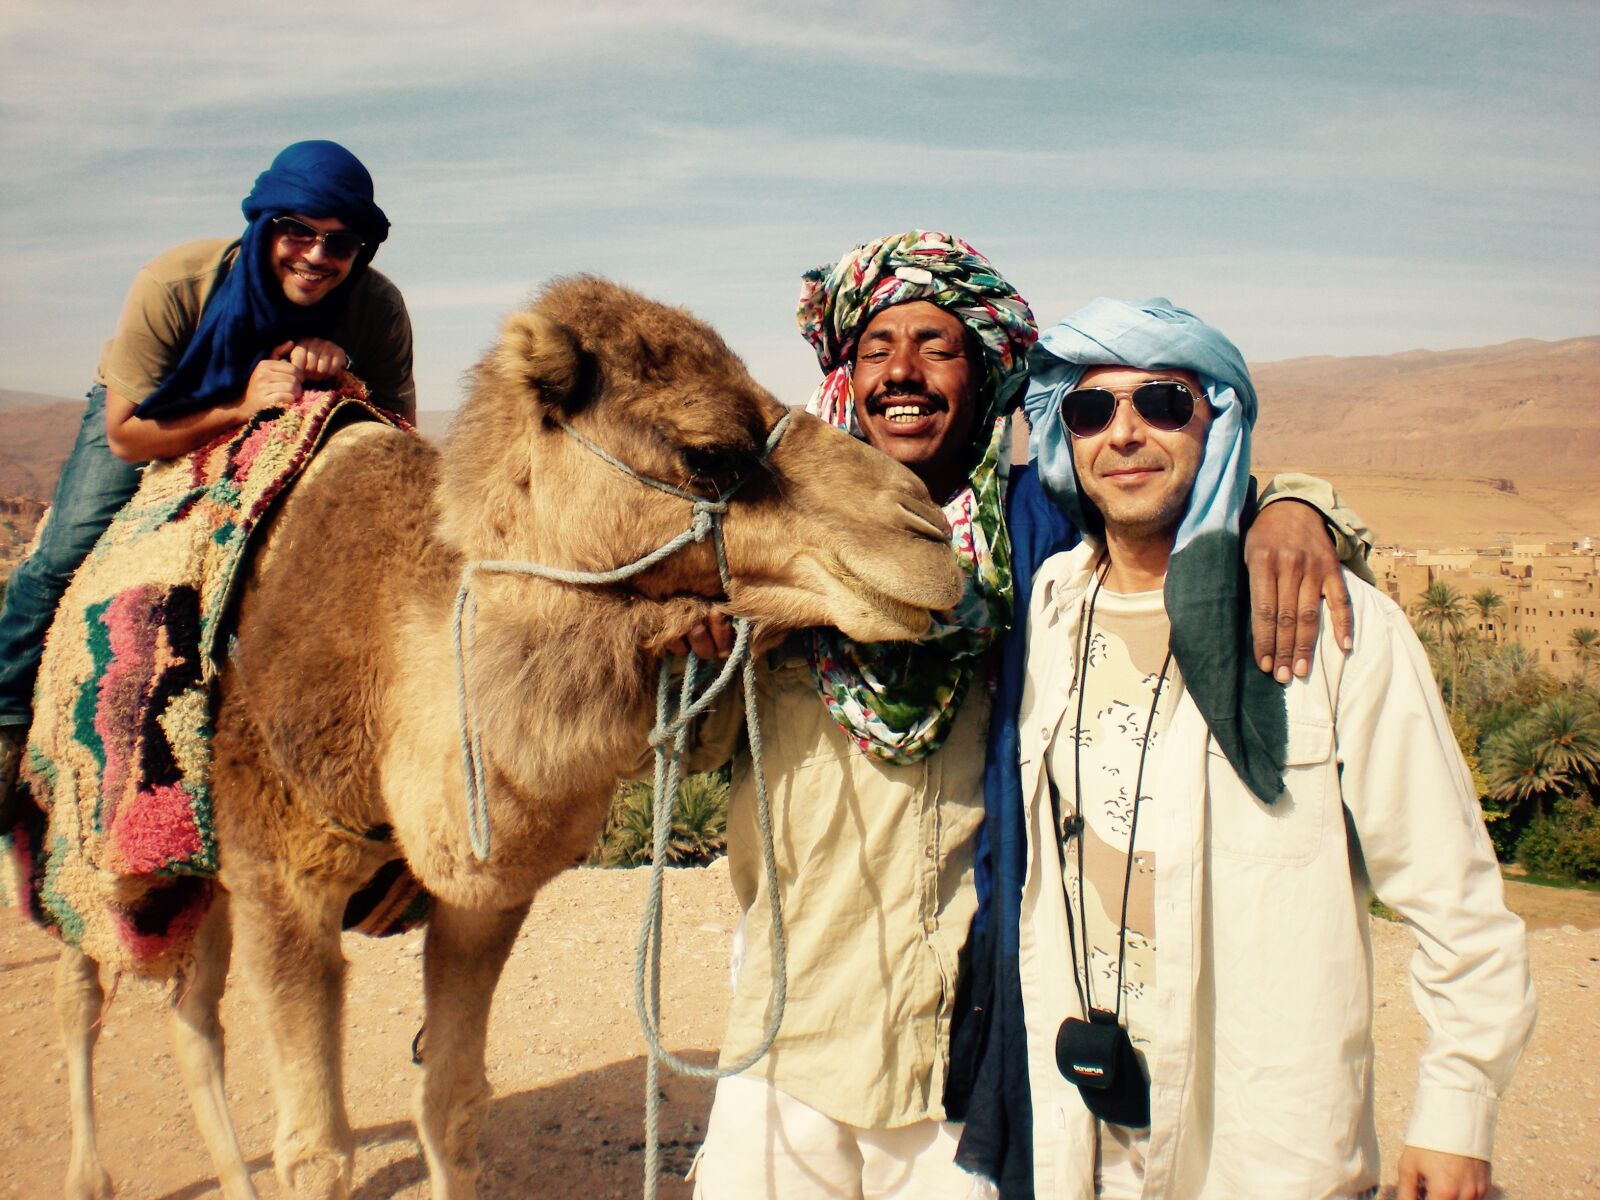 Nikon Coolpix S210 sample photo. Camel, portrait, desert photography